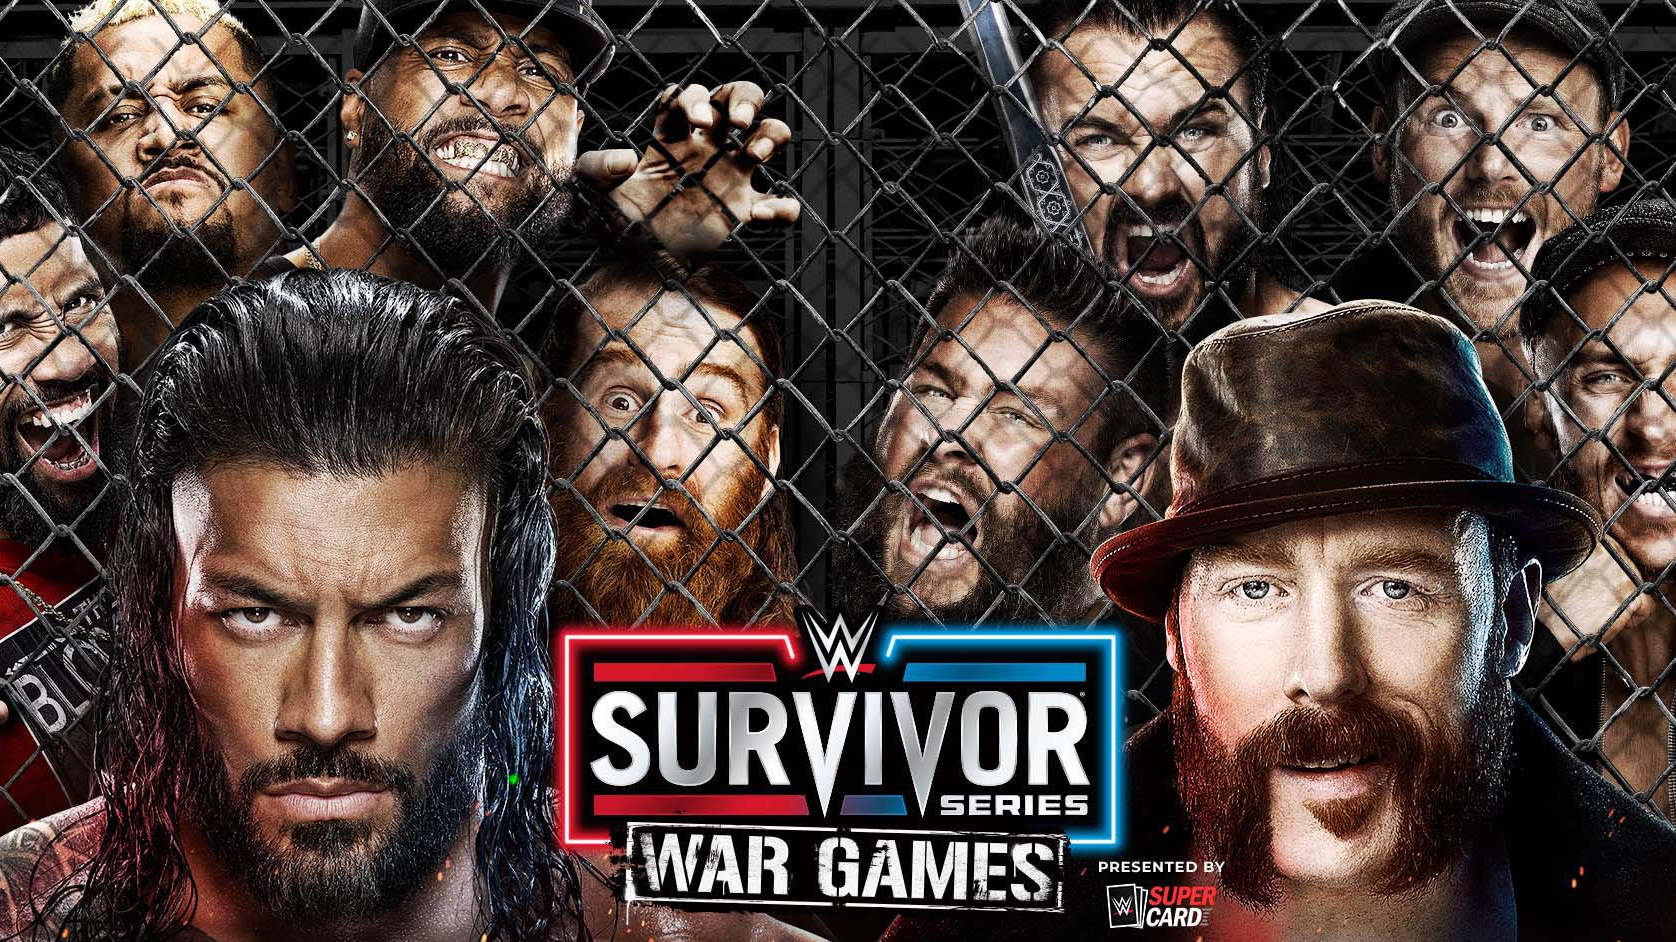 WWE Survivor Series WarGames 2022 live stream How to watch online